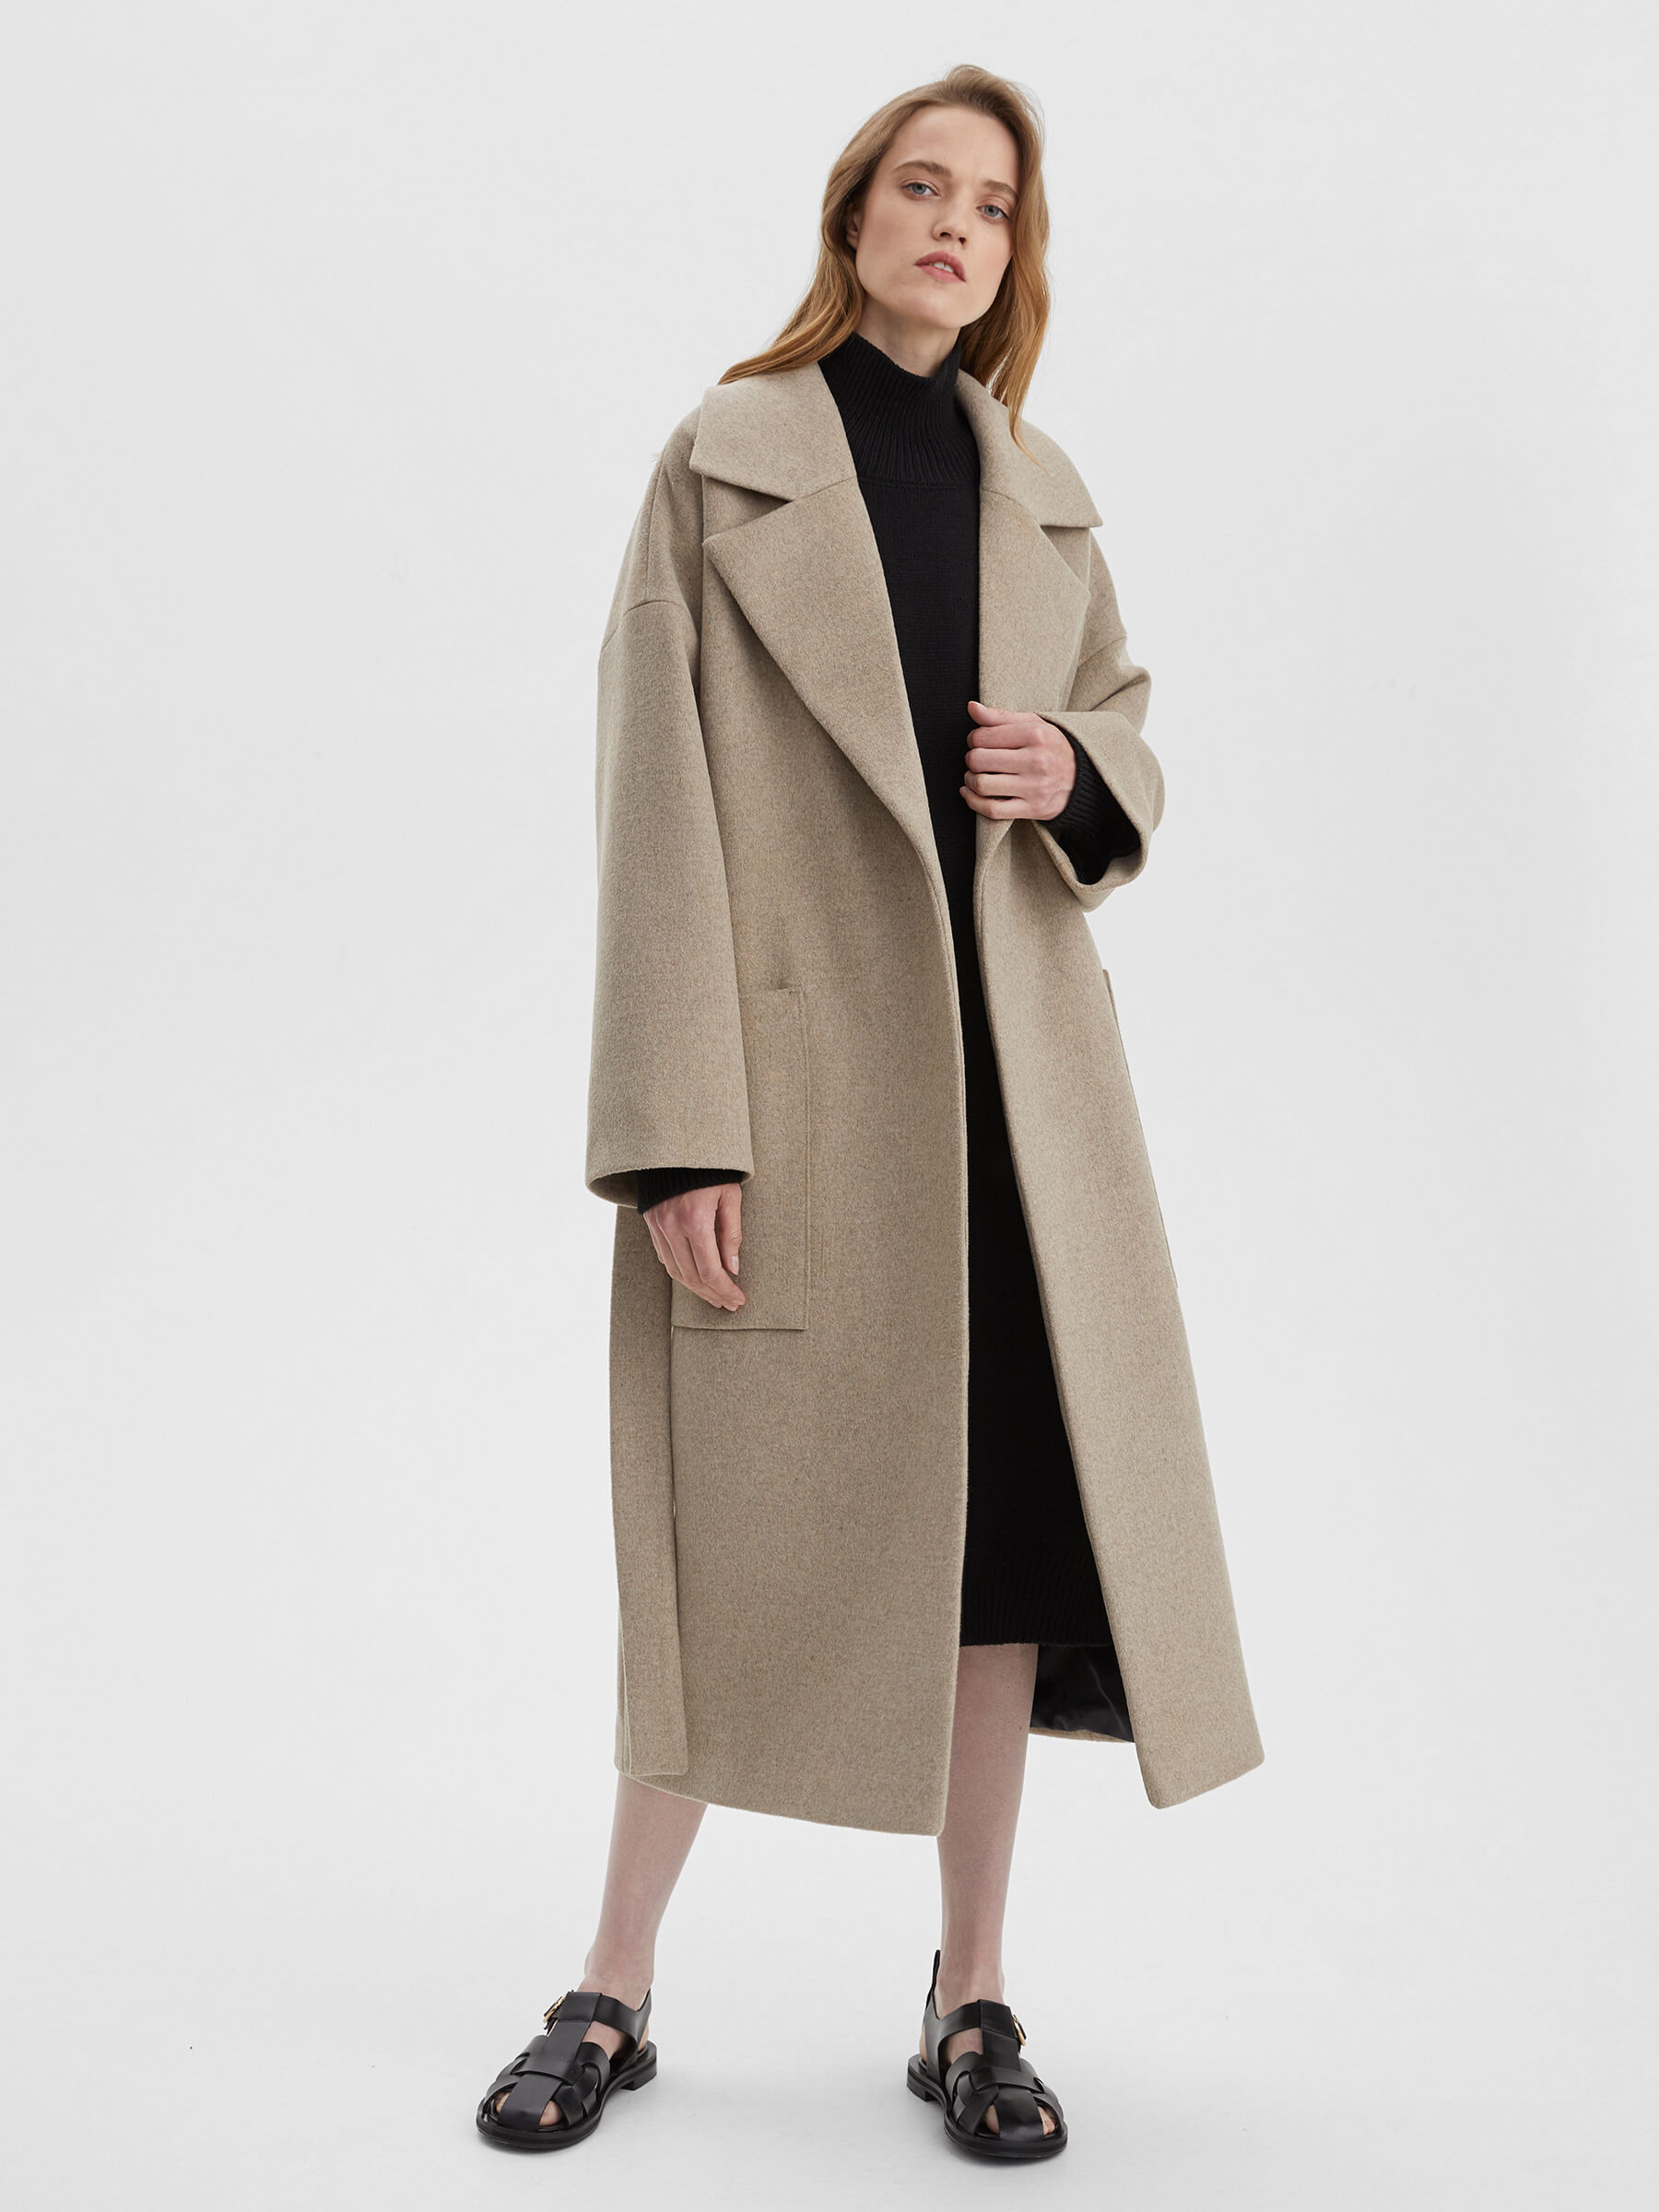 Пальто женское длинное с объемными карманами и поясом, цвет – молочный женское шерстяное пальто с поясом теплое двубортное пальто средней длины с отложным воротником в корейском стиле осень зима 2021